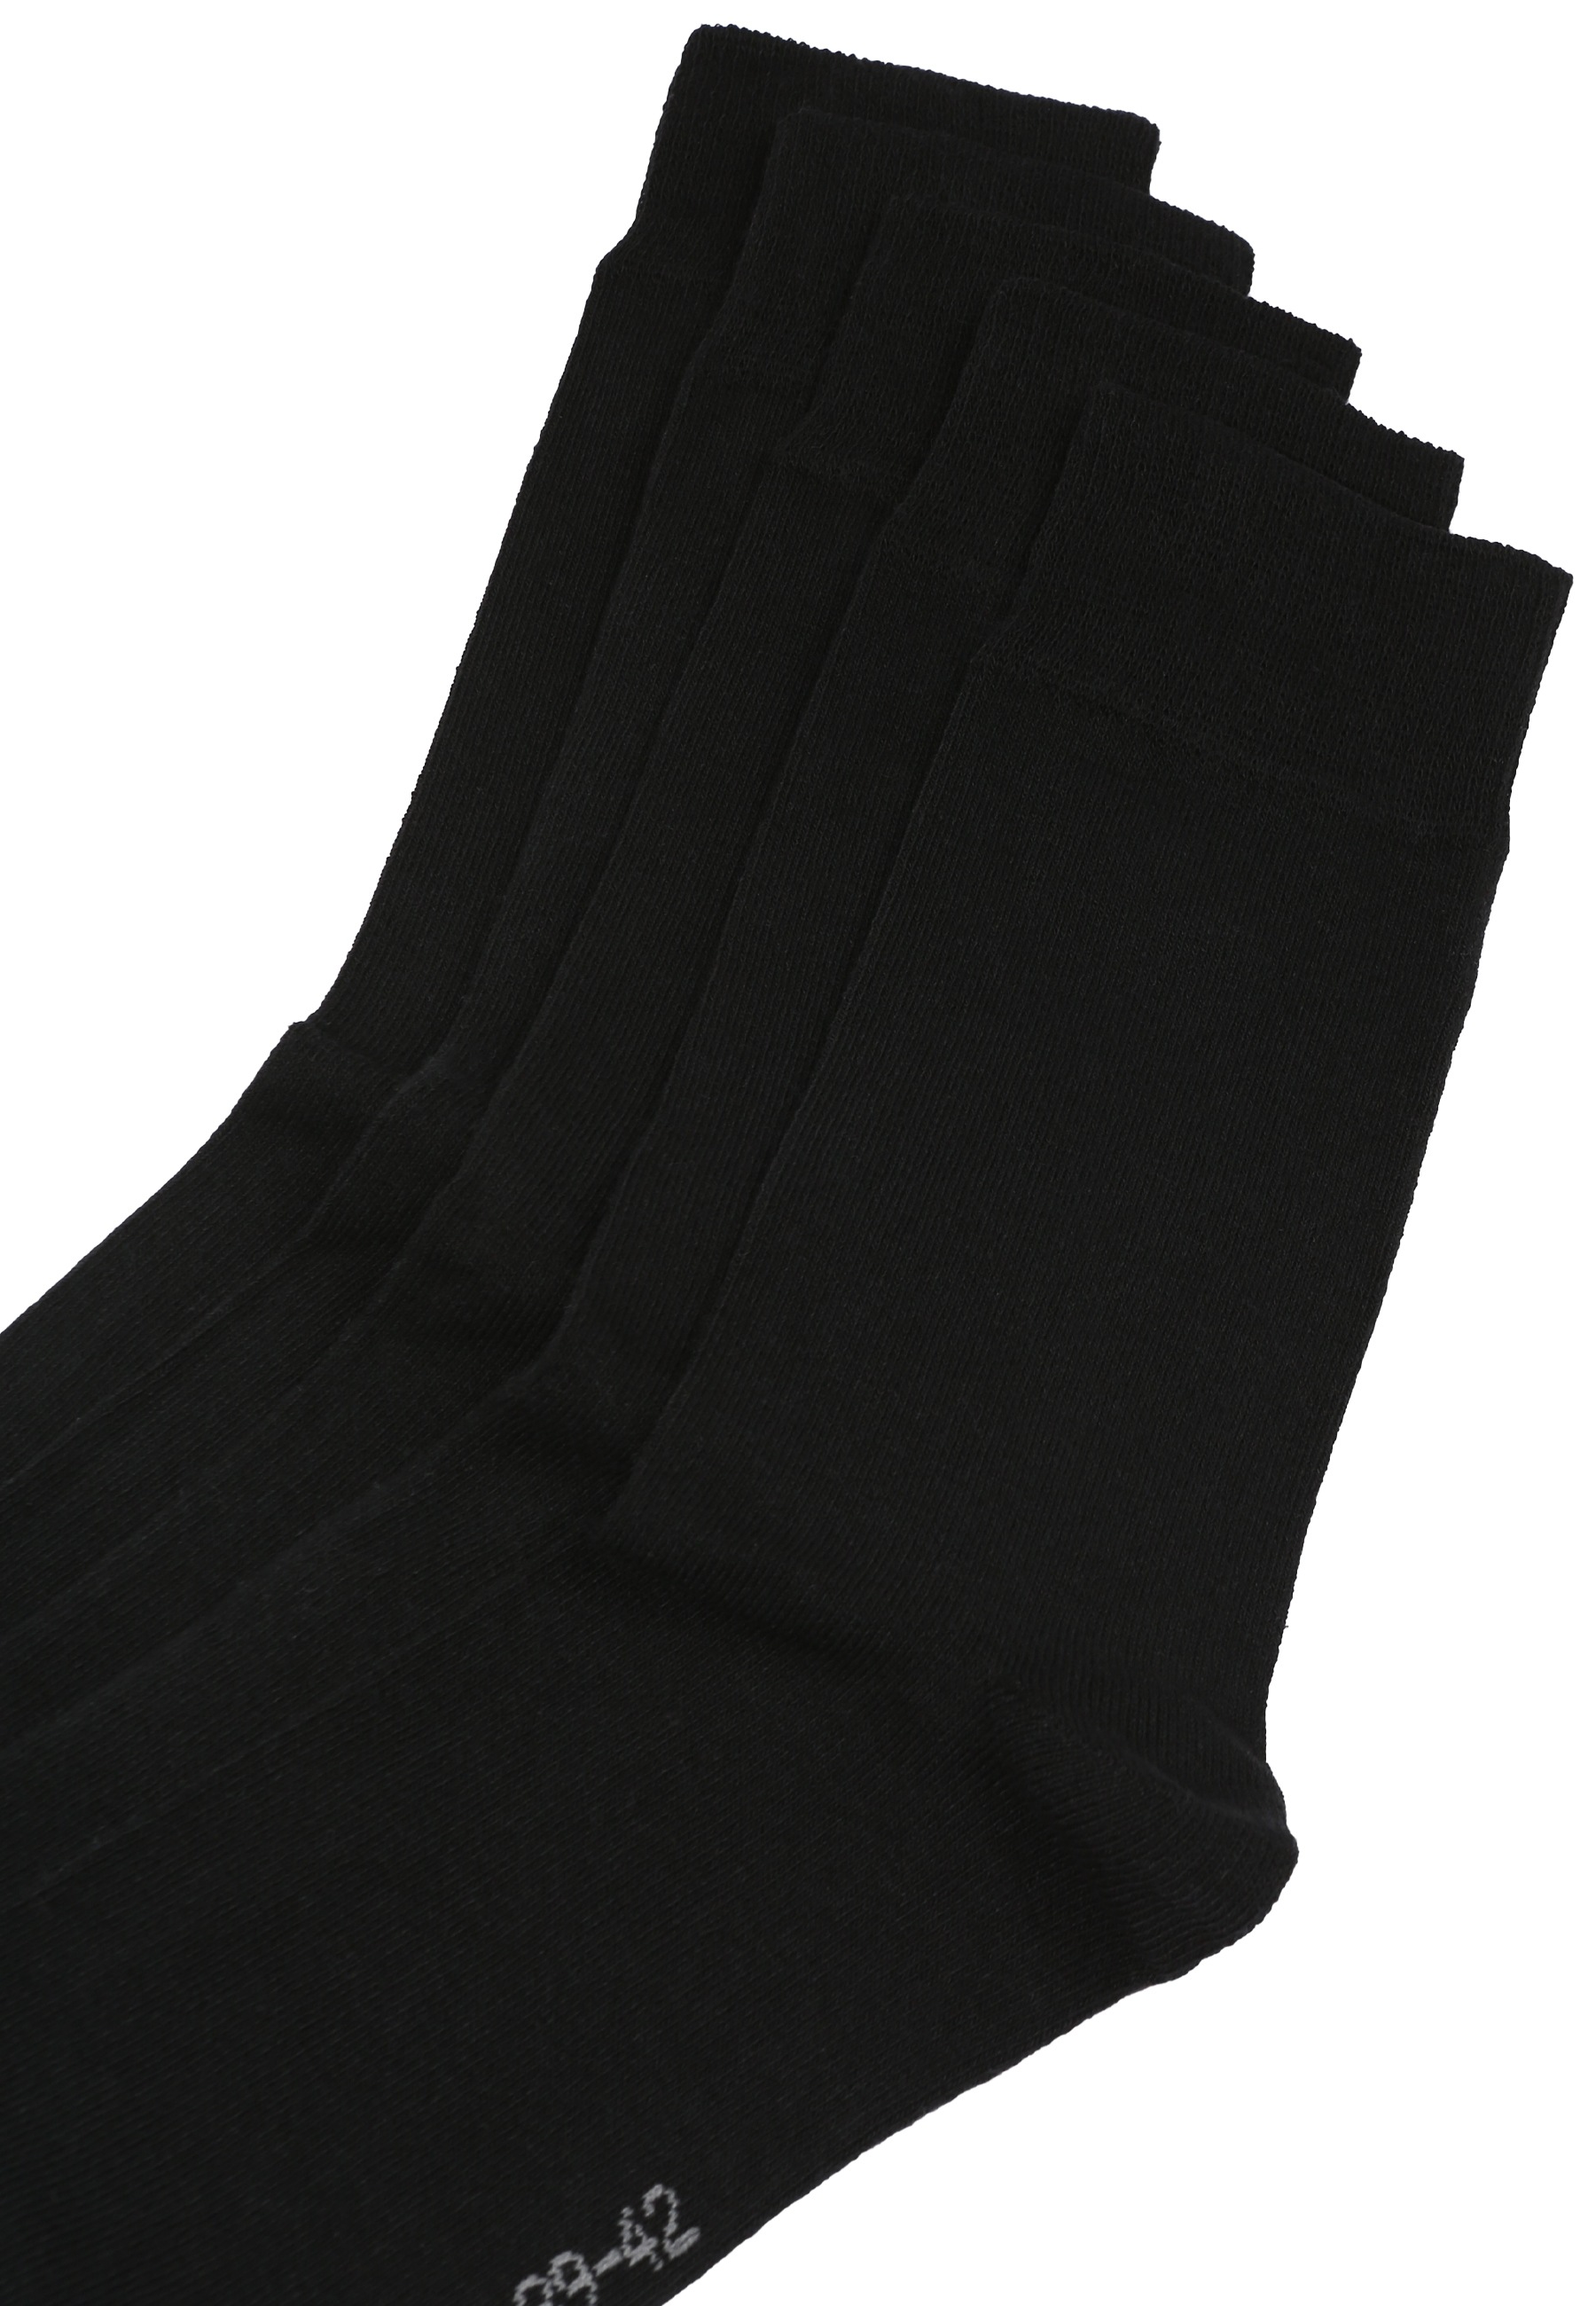 GÖTZBURG Socken, (5 Paar), im 5er-Pack mit Silverplus-Technologie